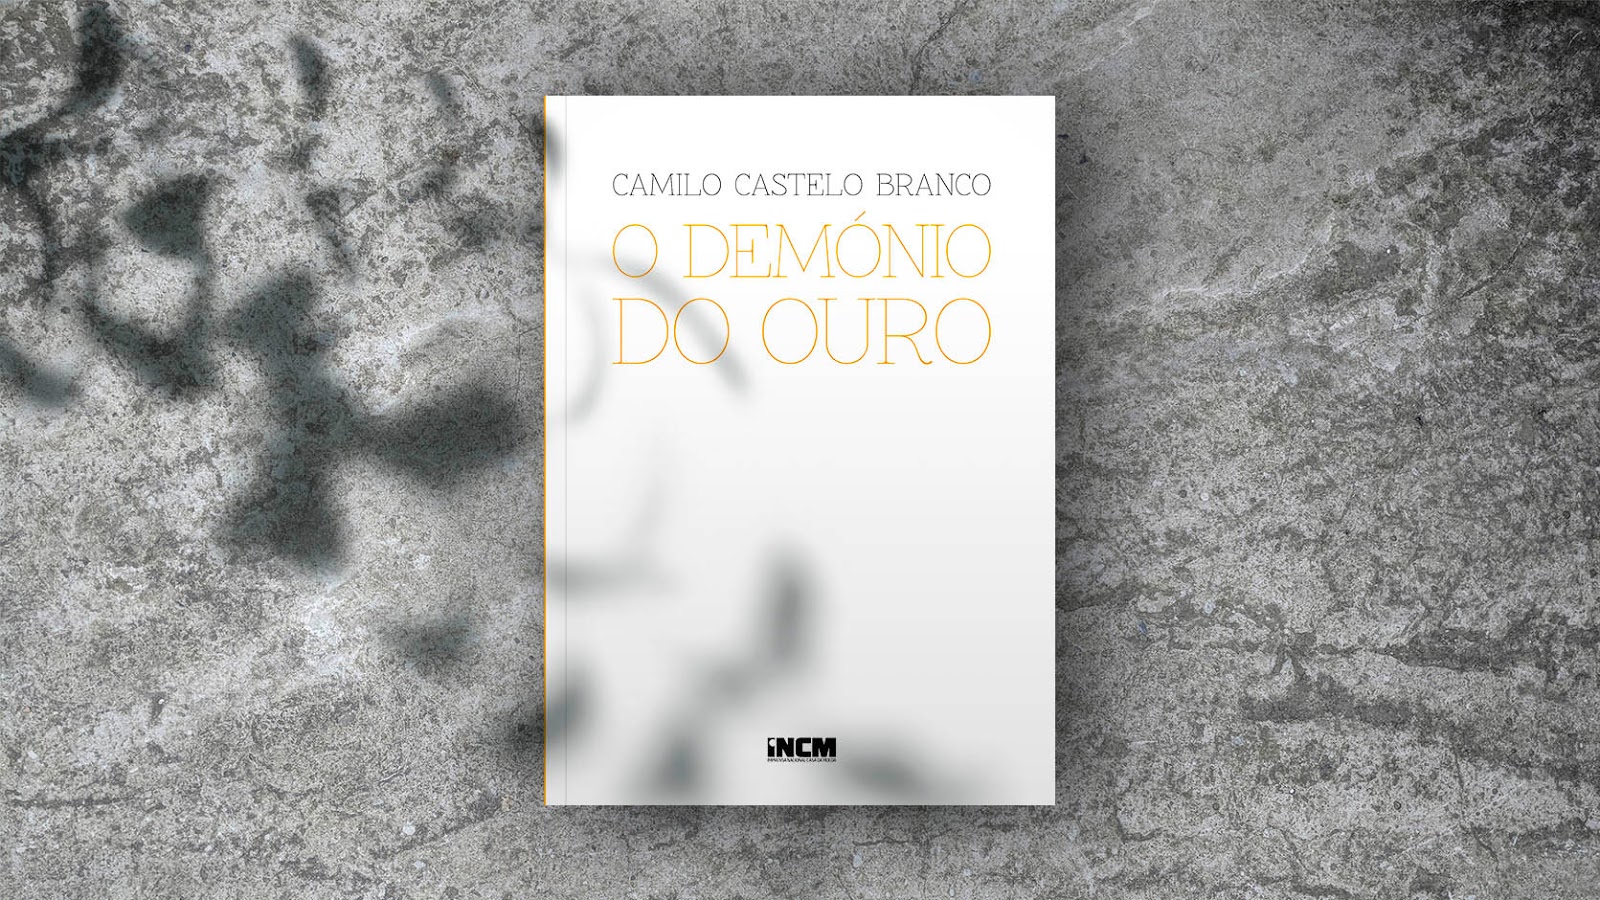 Edições Gratuitas | Edição Crítica de Camilo Castelo Branco | O Demónio do Ouro